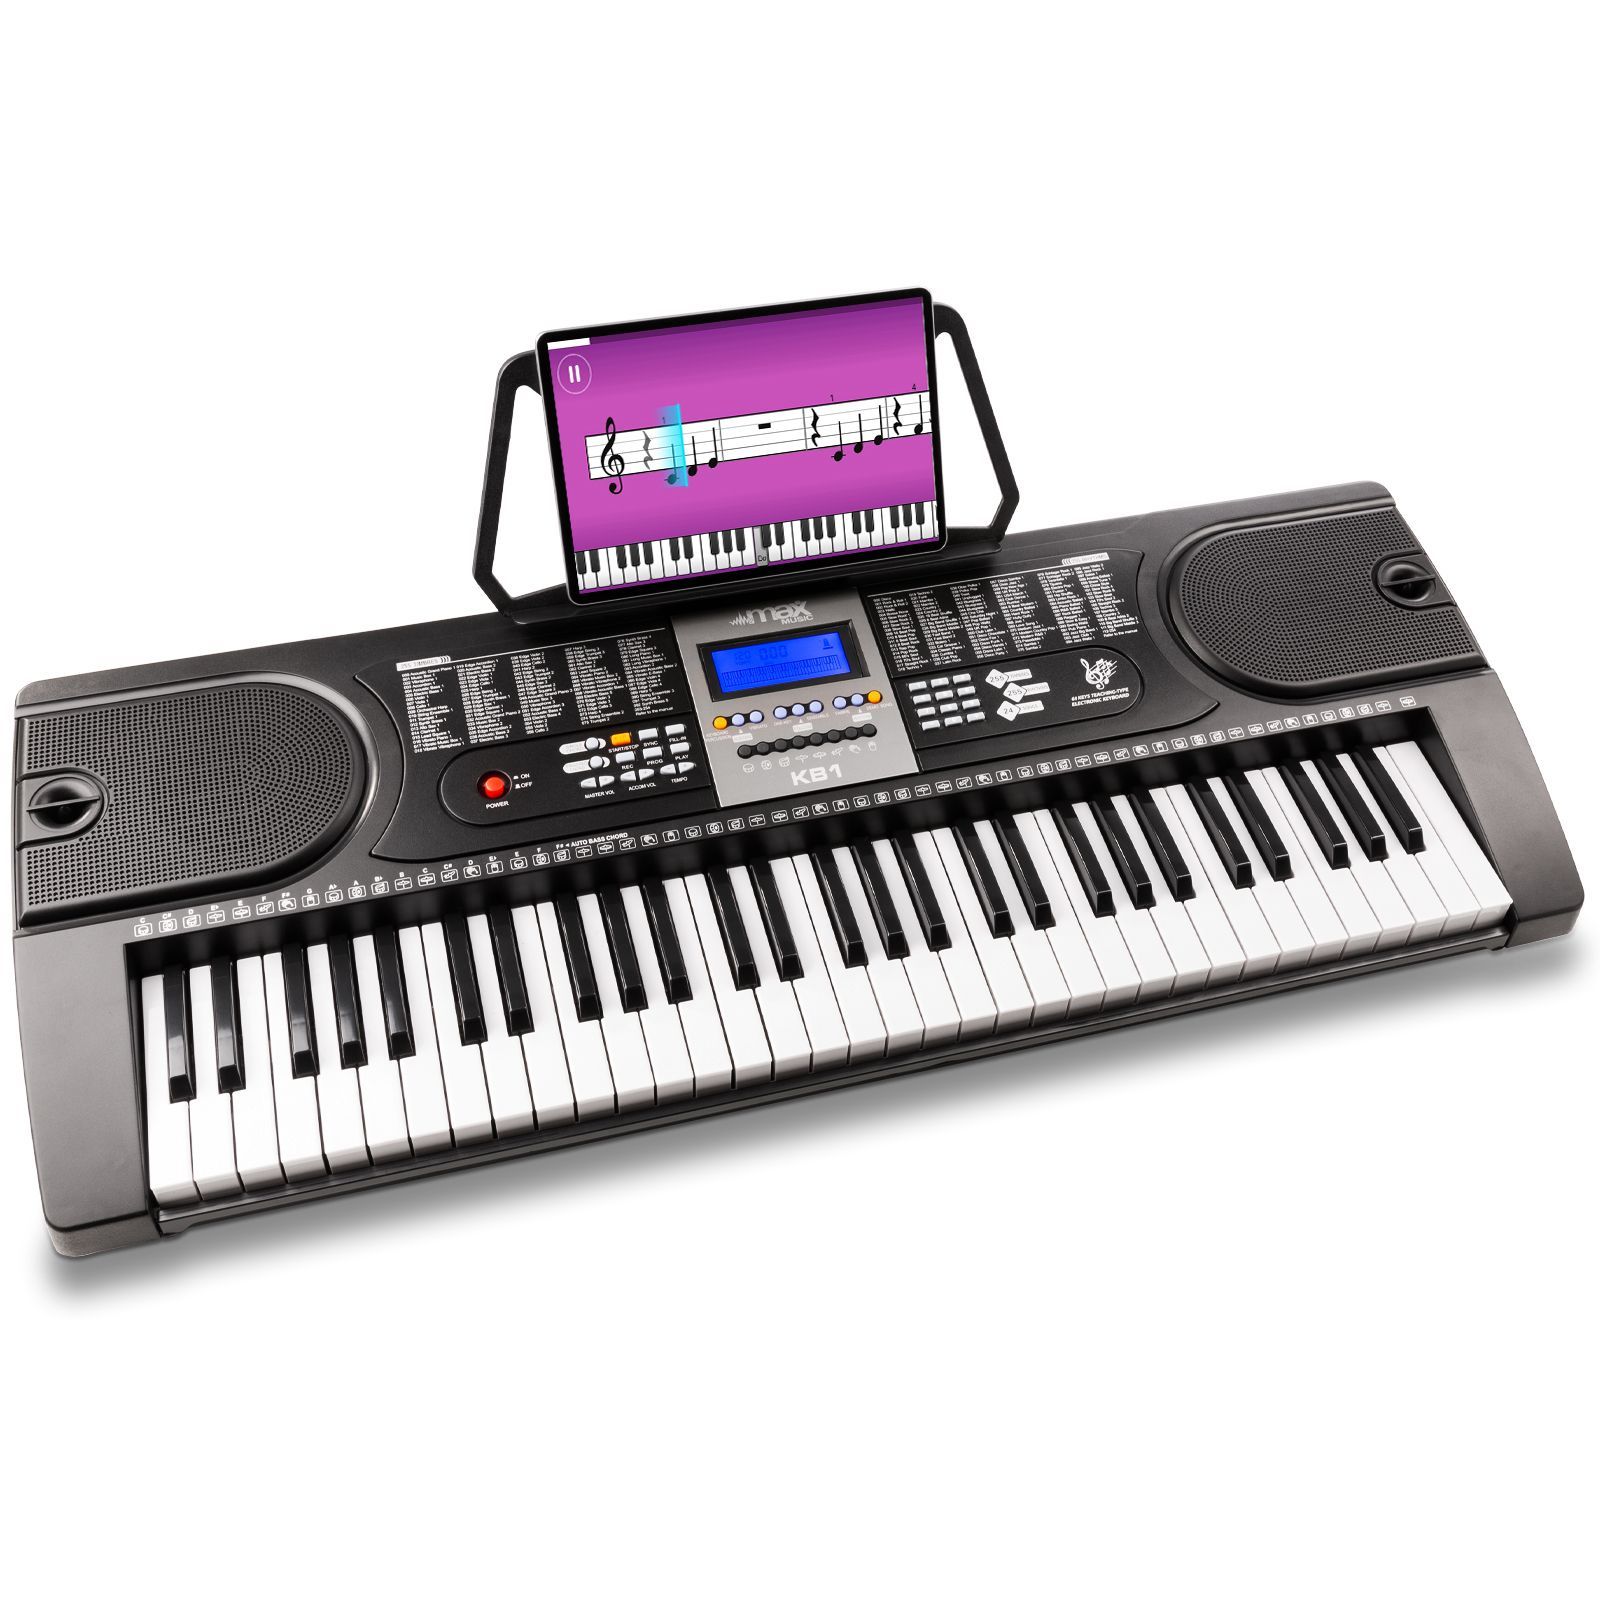 Retourdeal - MAX KB1 Keyboard met 61 toetsen en trainingsfunctie